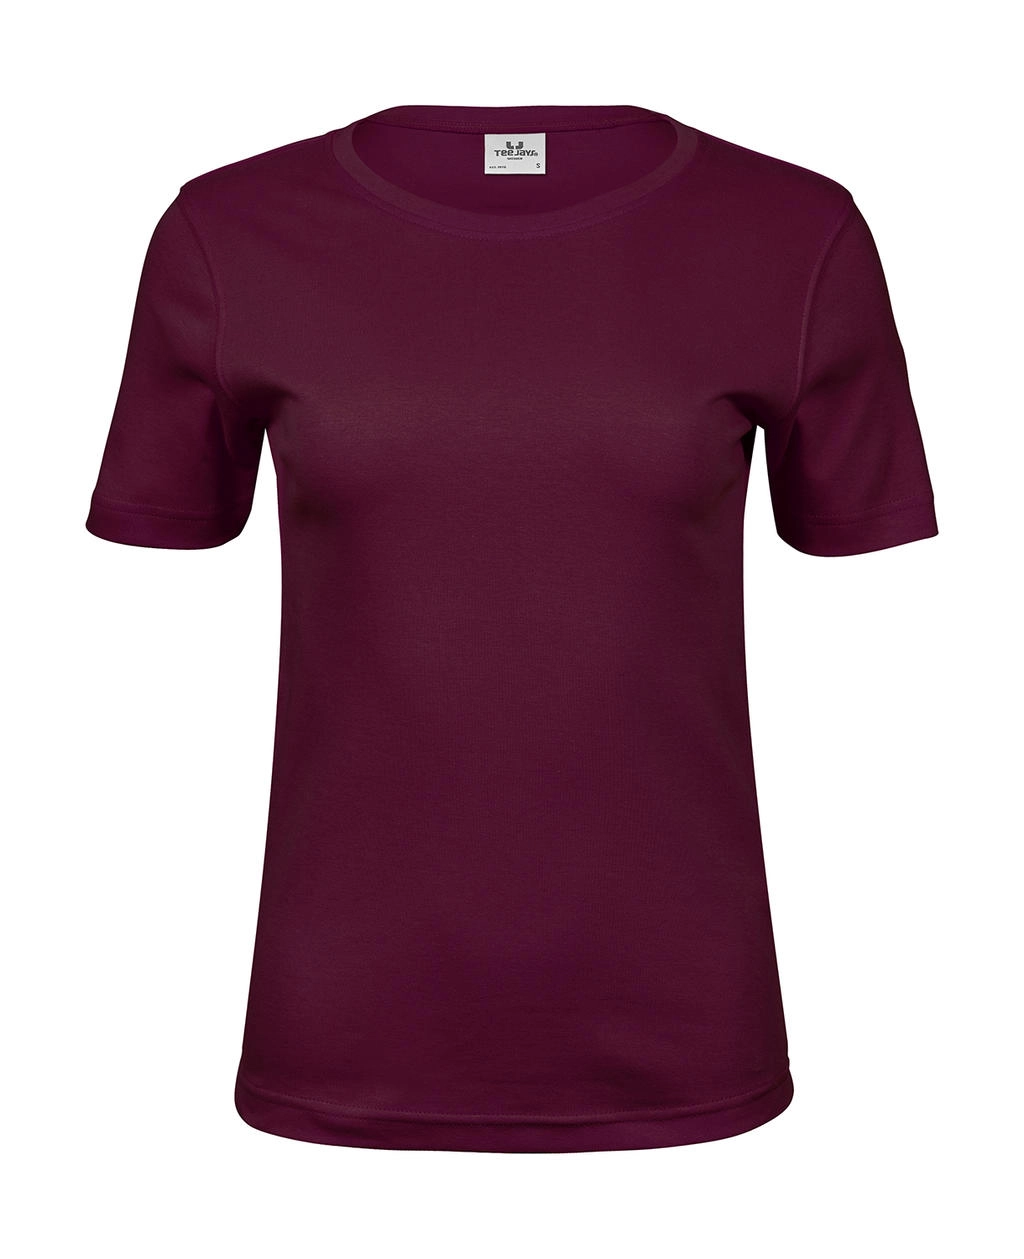 Ladies` Interlock T-Shirt zum Besticken und Bedrucken in der Farbe Wine mit Ihren Logo, Schriftzug oder Motiv.